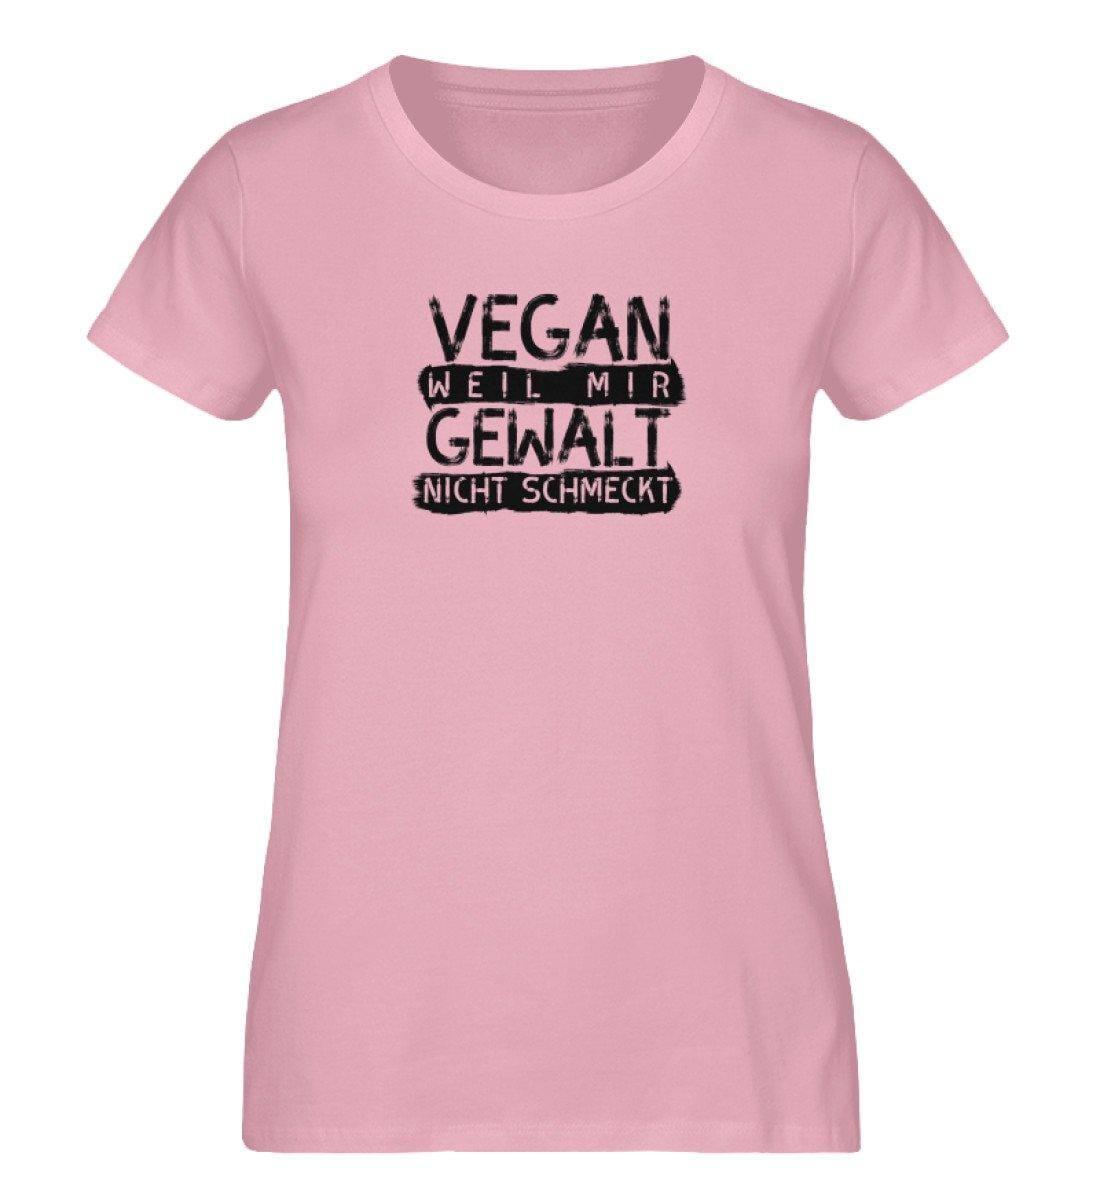 Vegan weil mir Gewalt nicht schmeckt - Damen Organic Shirt - Team Vegan © vegan t shirt